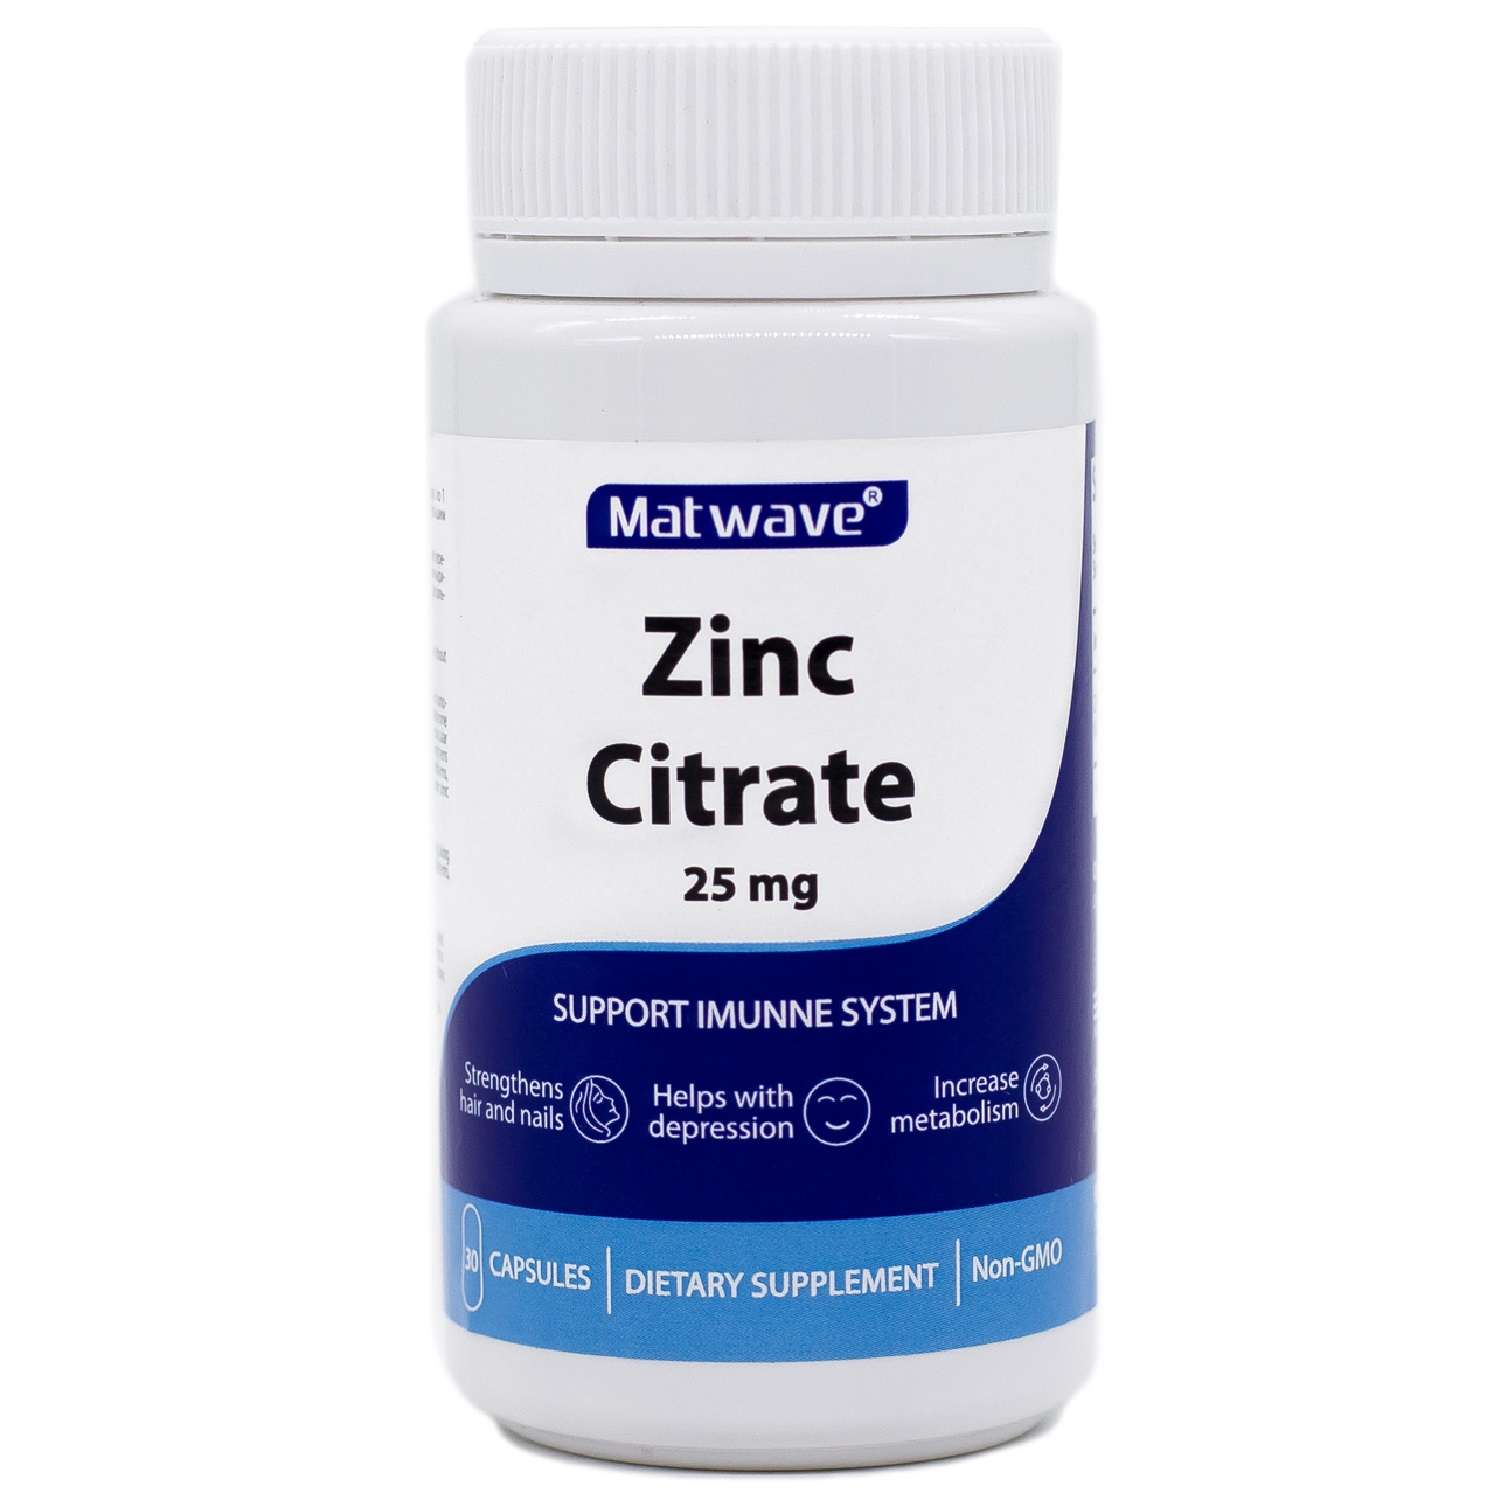 БАД Matwave Цинка Цитрат Zinc Citrate 25 мг 30 капсул комплект 3 банки - фото 4